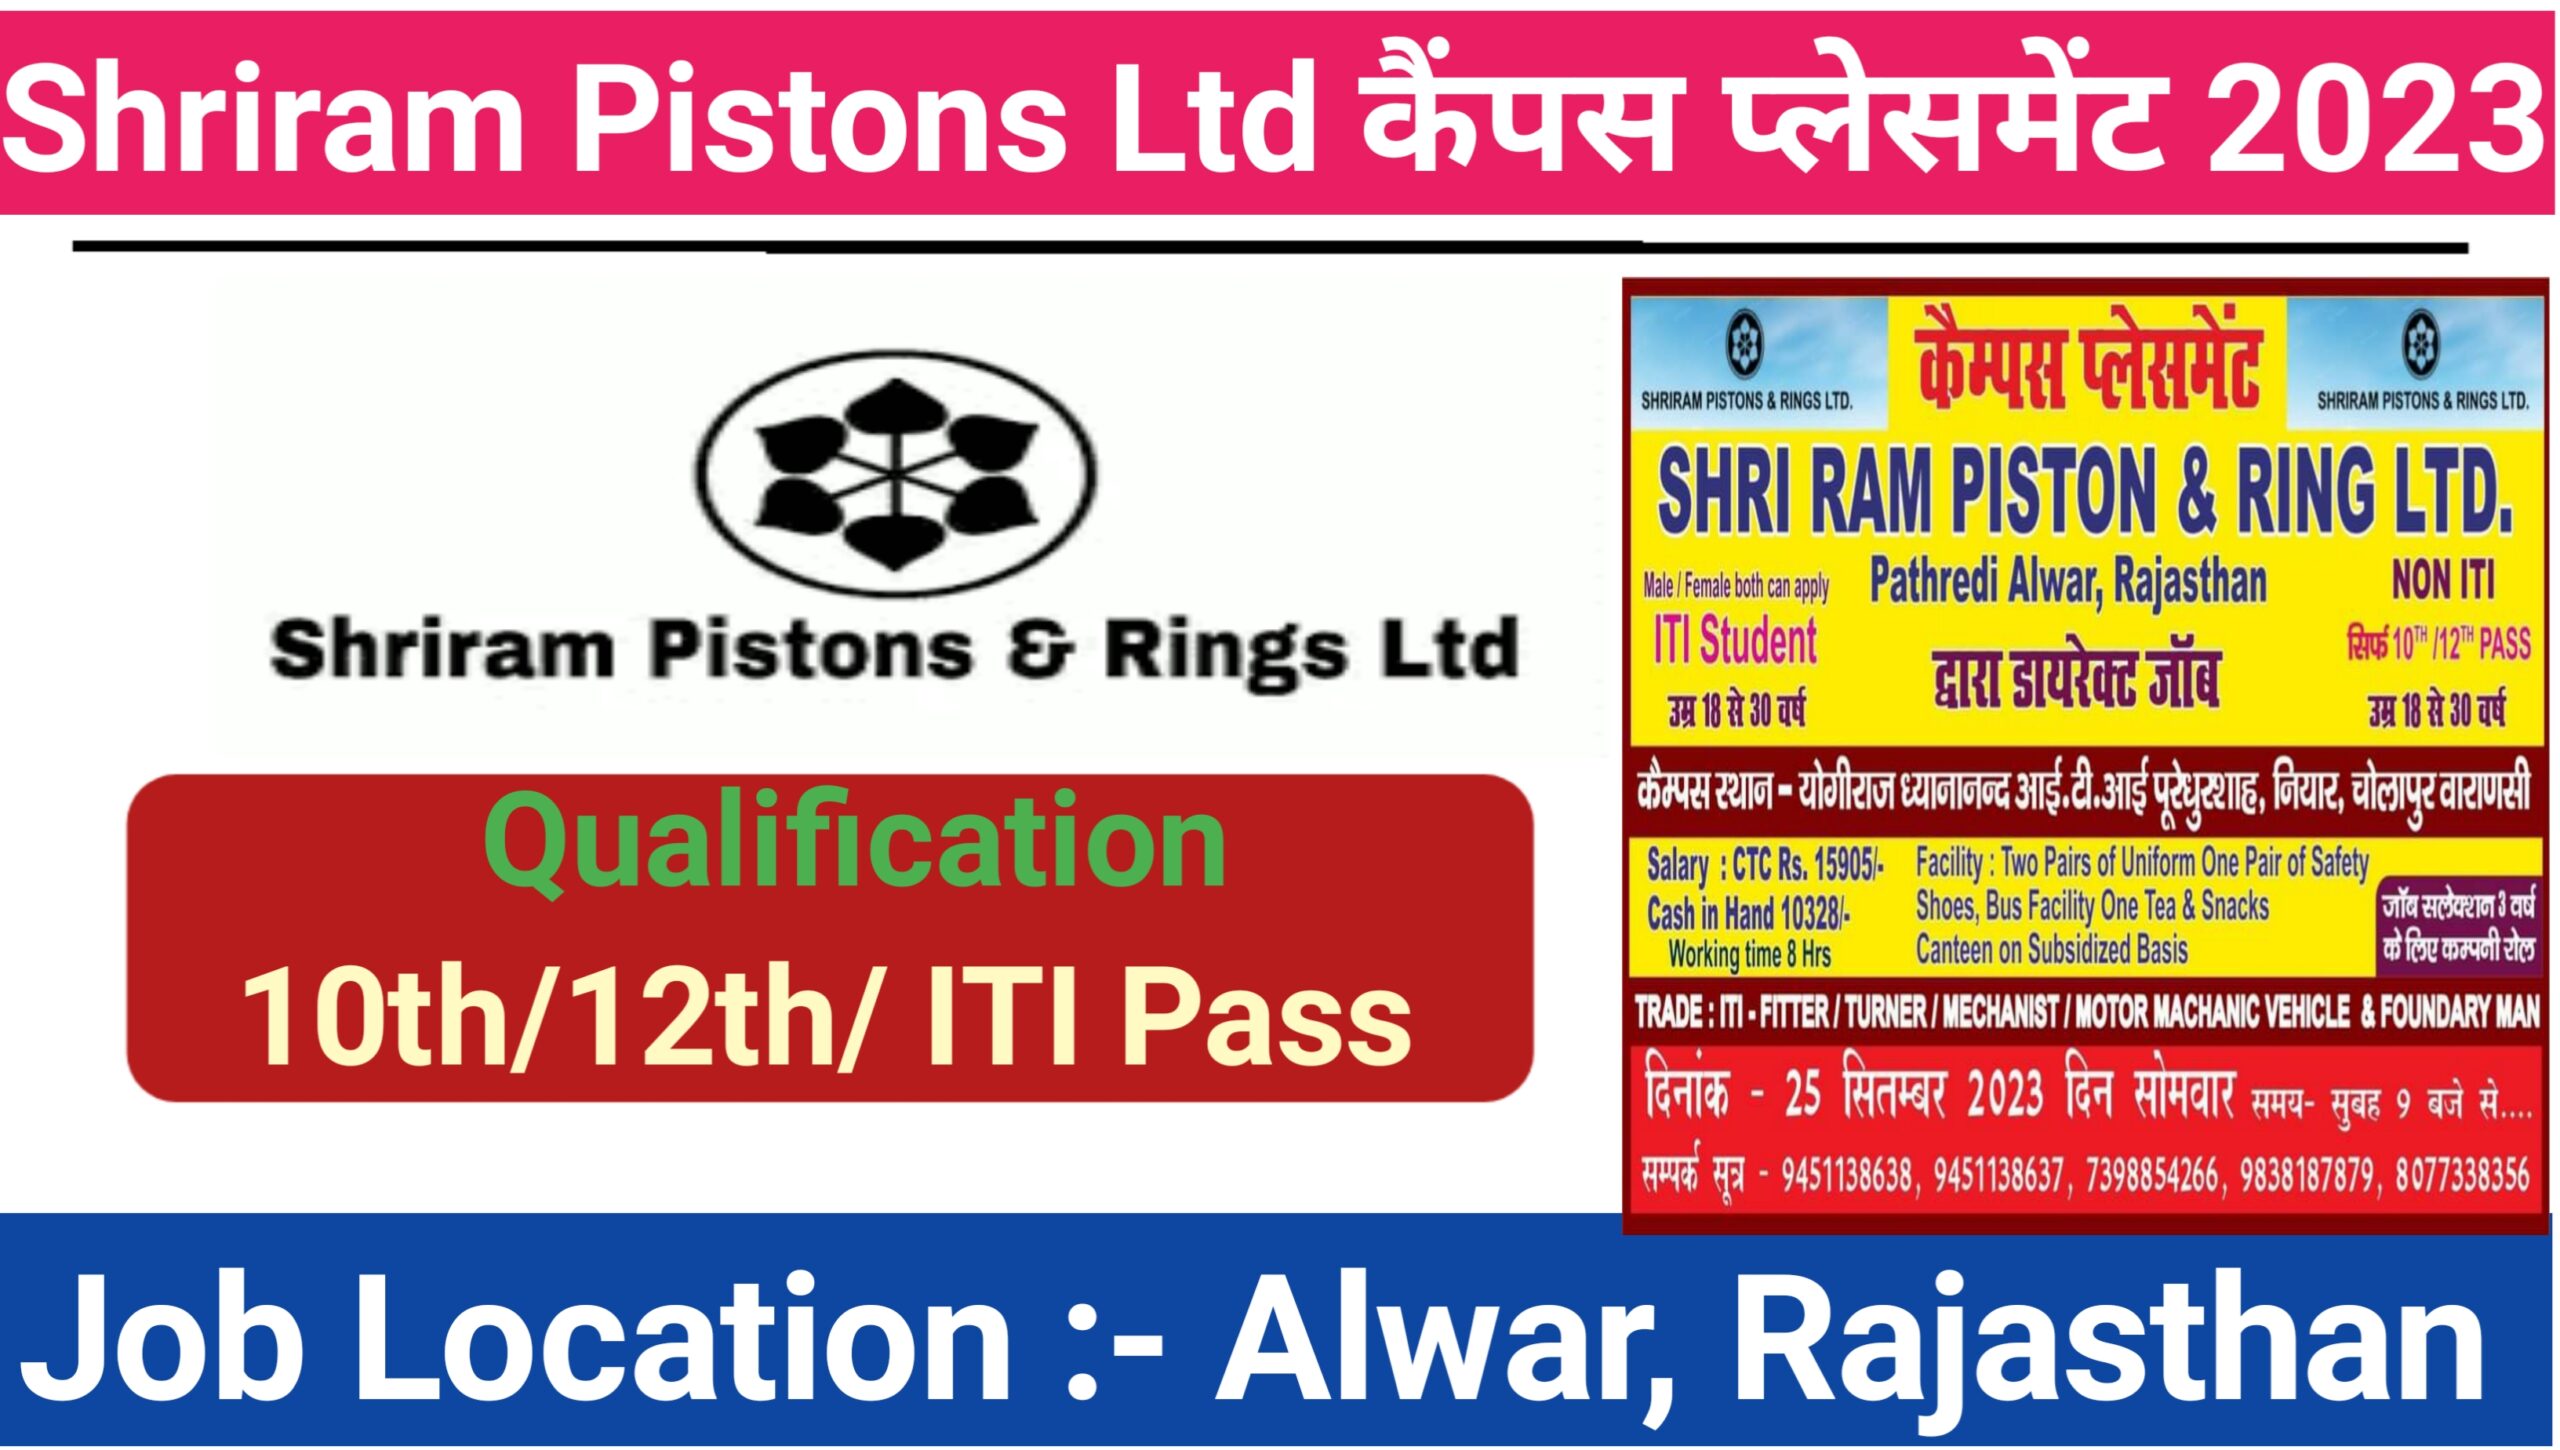 Shriram Pistons & Rings Ltd. Ghaziabad